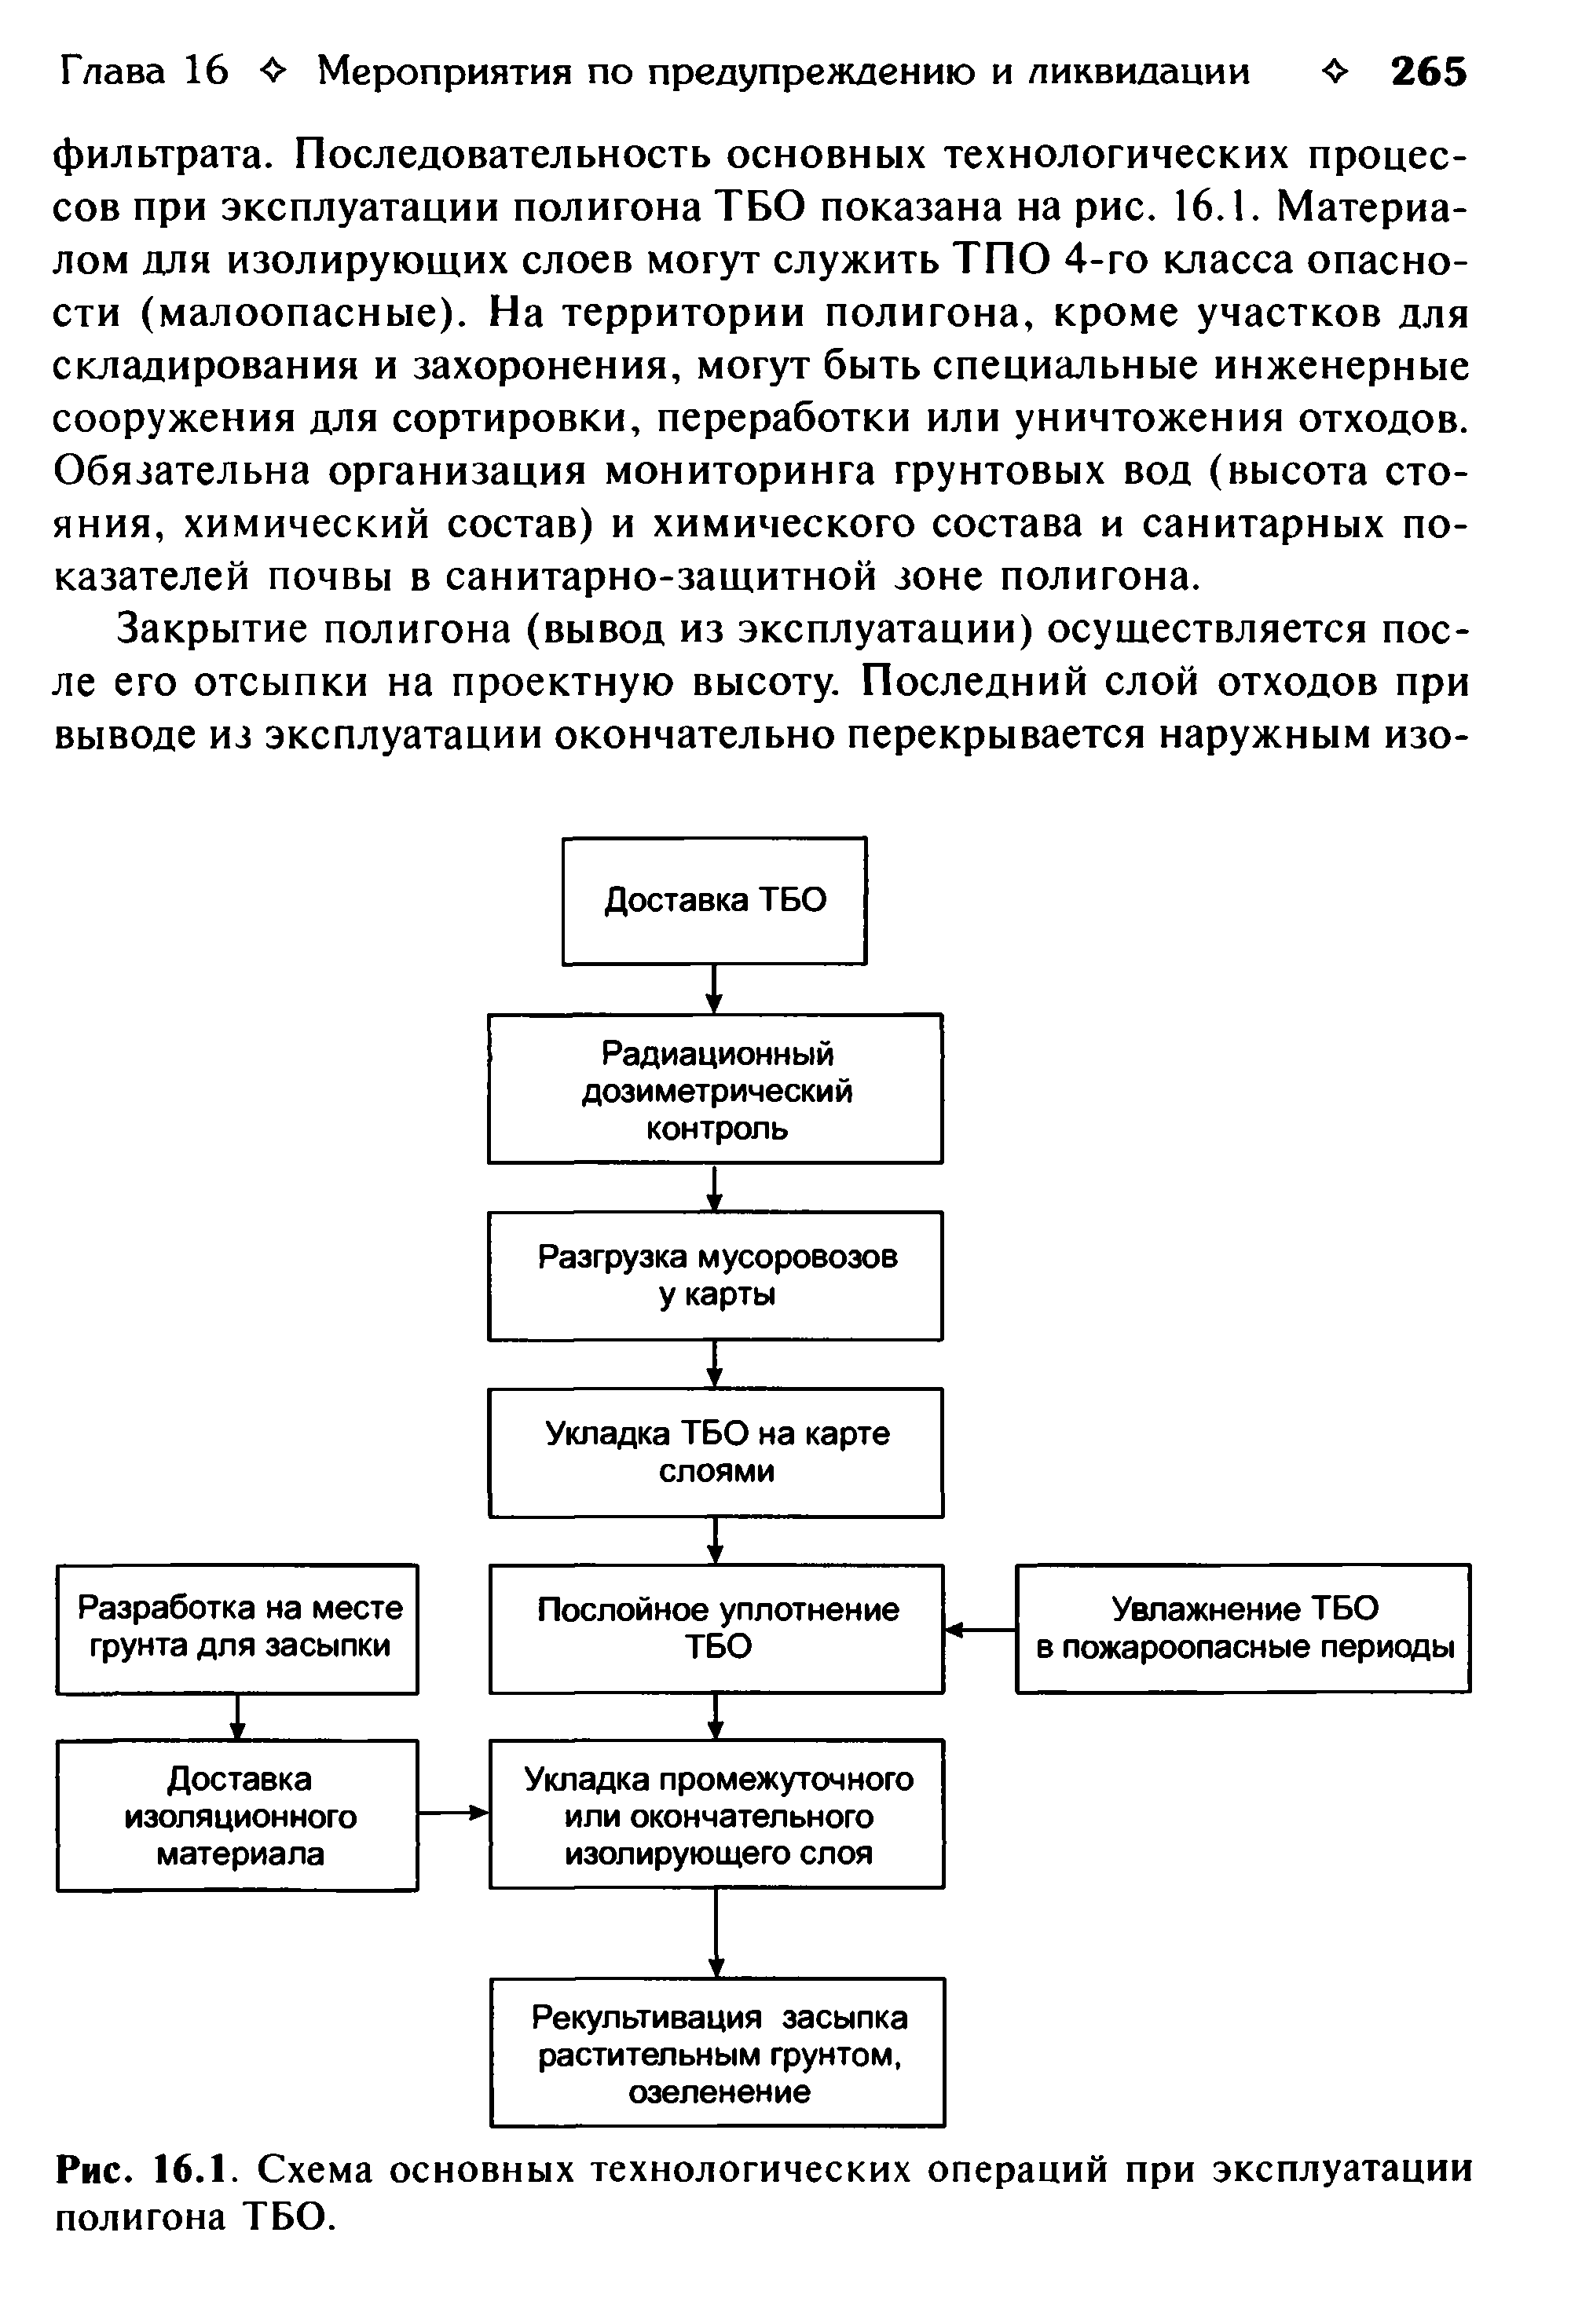 Рис. 16.1. Схема основных технологических операций при эксплуатации полигона ТБО.